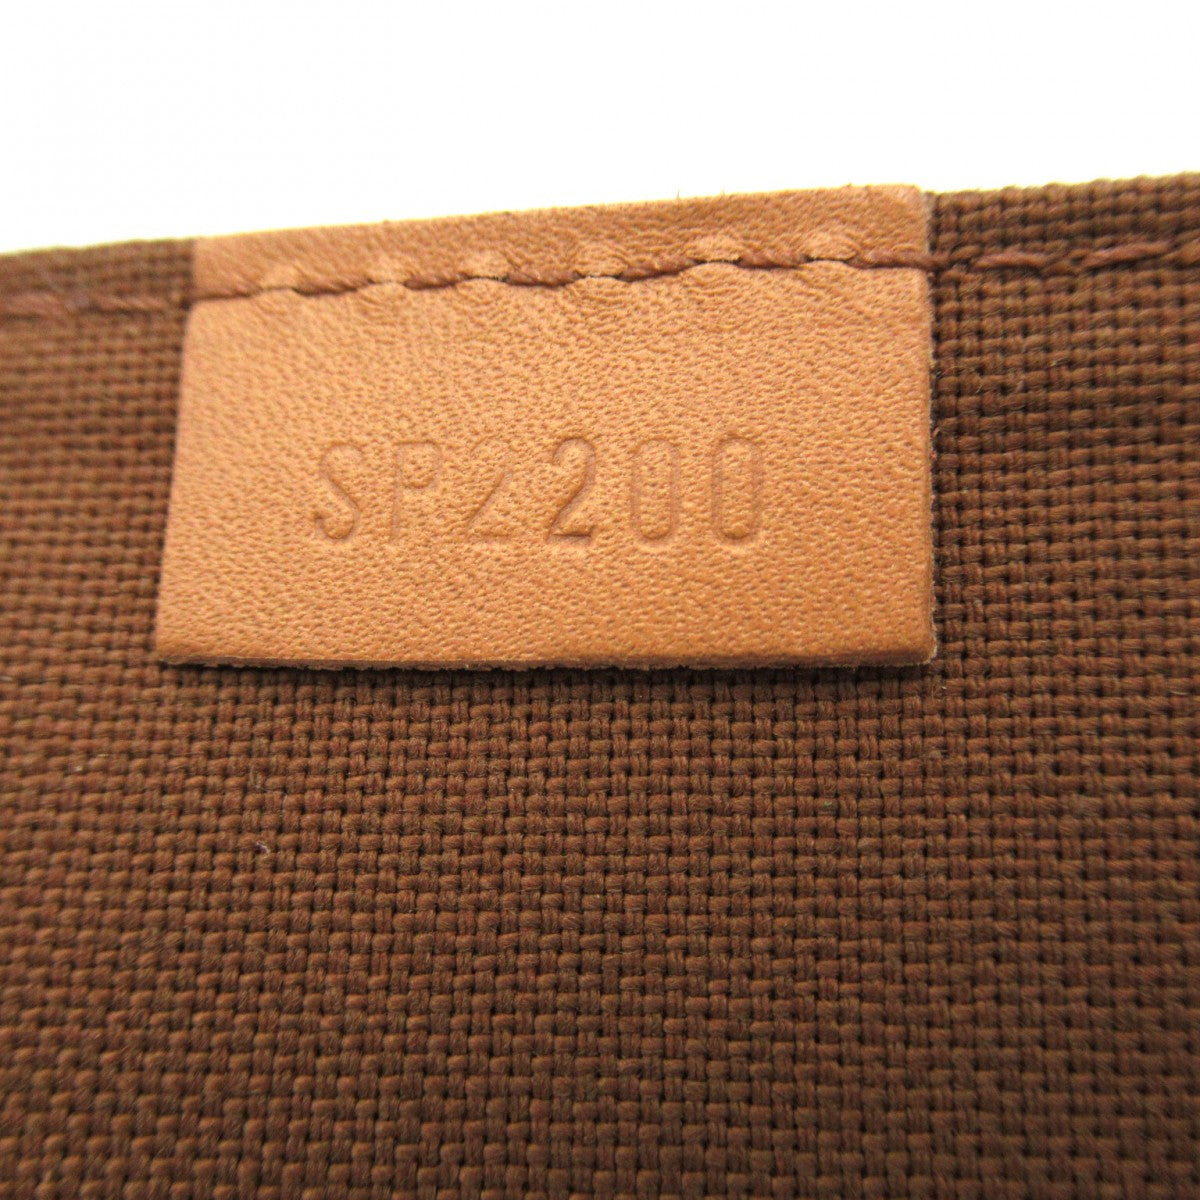 LOUIS VUITTON Monogram Petite Sac Plat M81295 Handbag from Japan